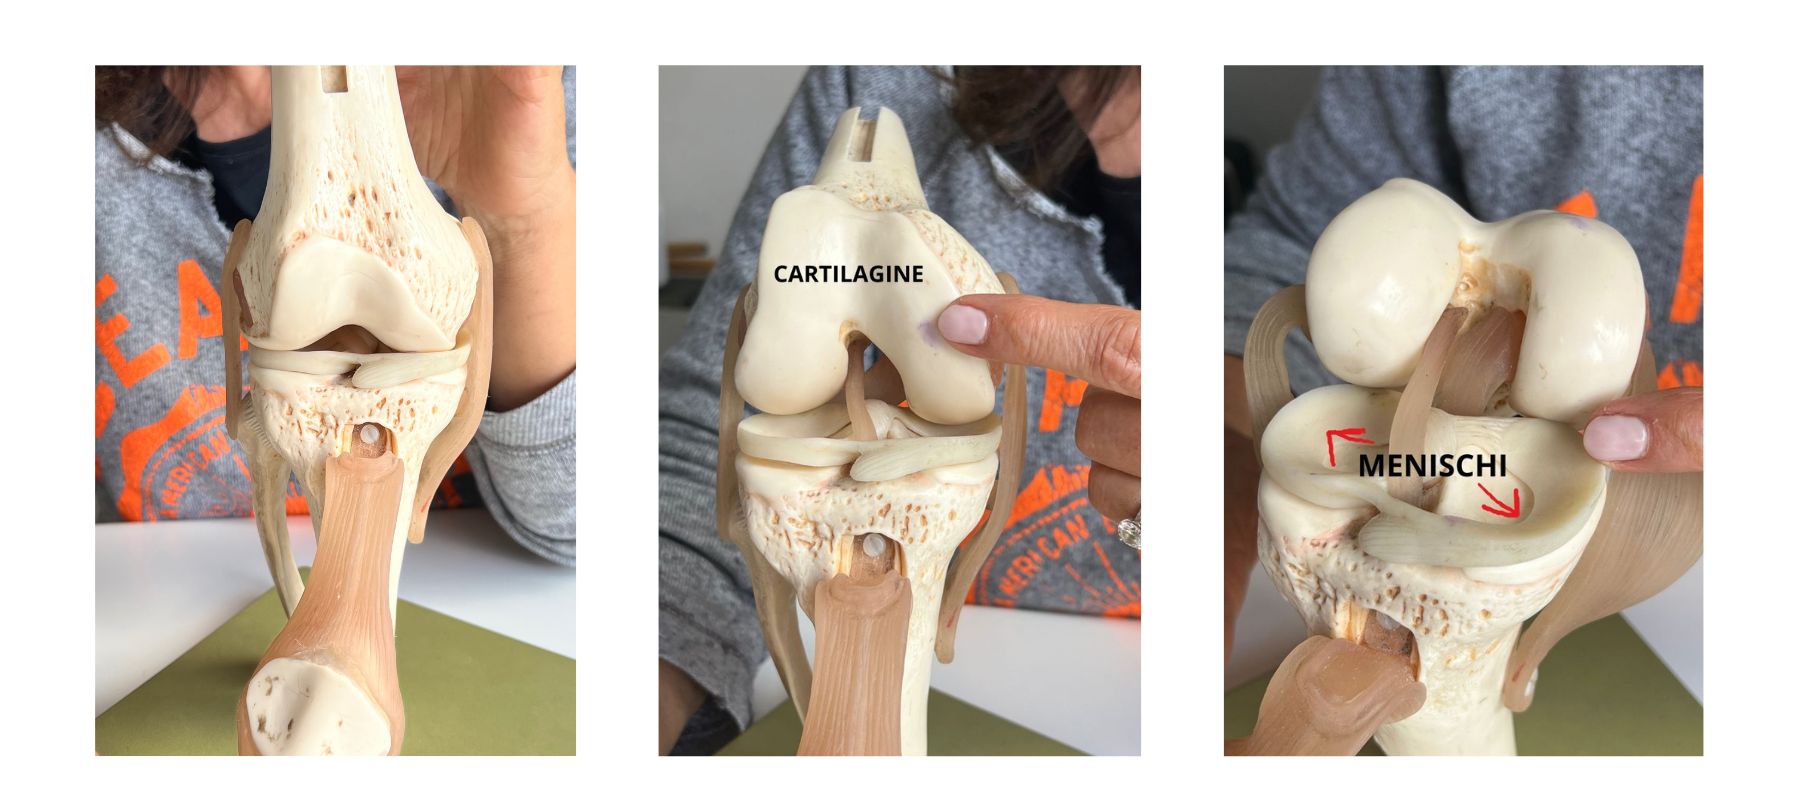 artrosi ginocchio modellino con cartilagine e menischi